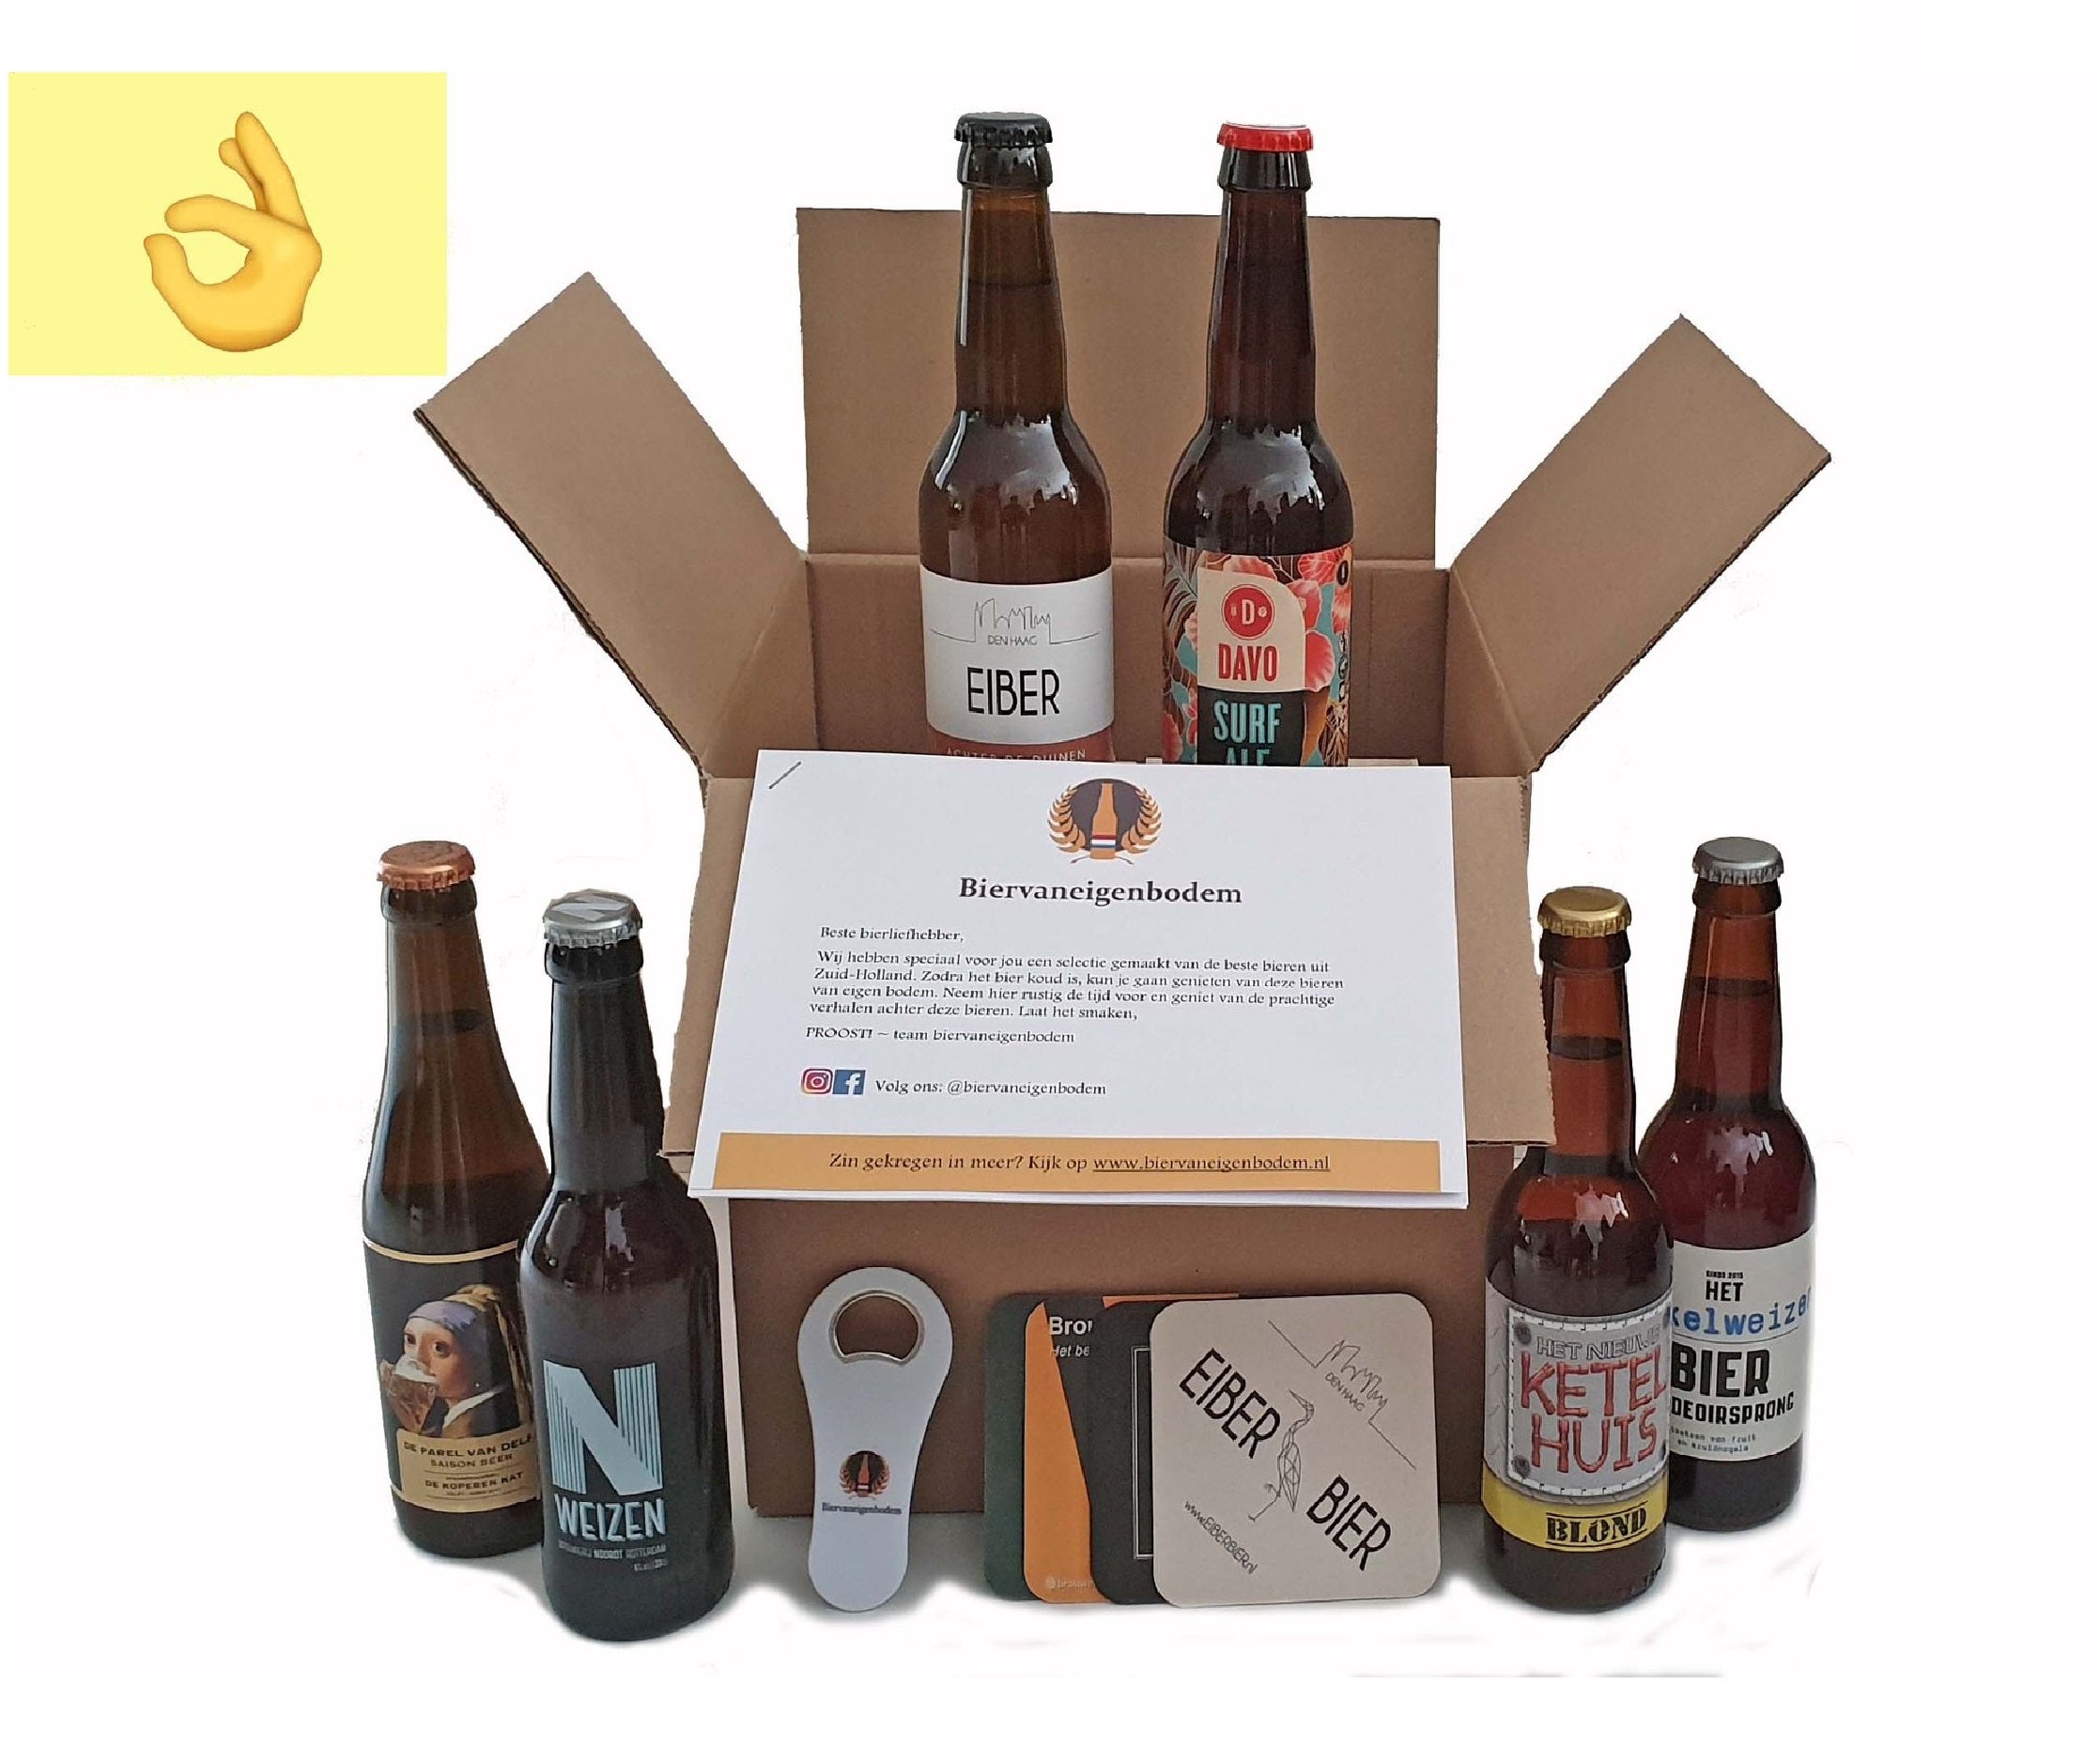 vleugel royalty hoogtepunt Bier proefpakket & Speciaalbier pakket | #1 in Biervaneigenbodem – Getagged  "bierkado"